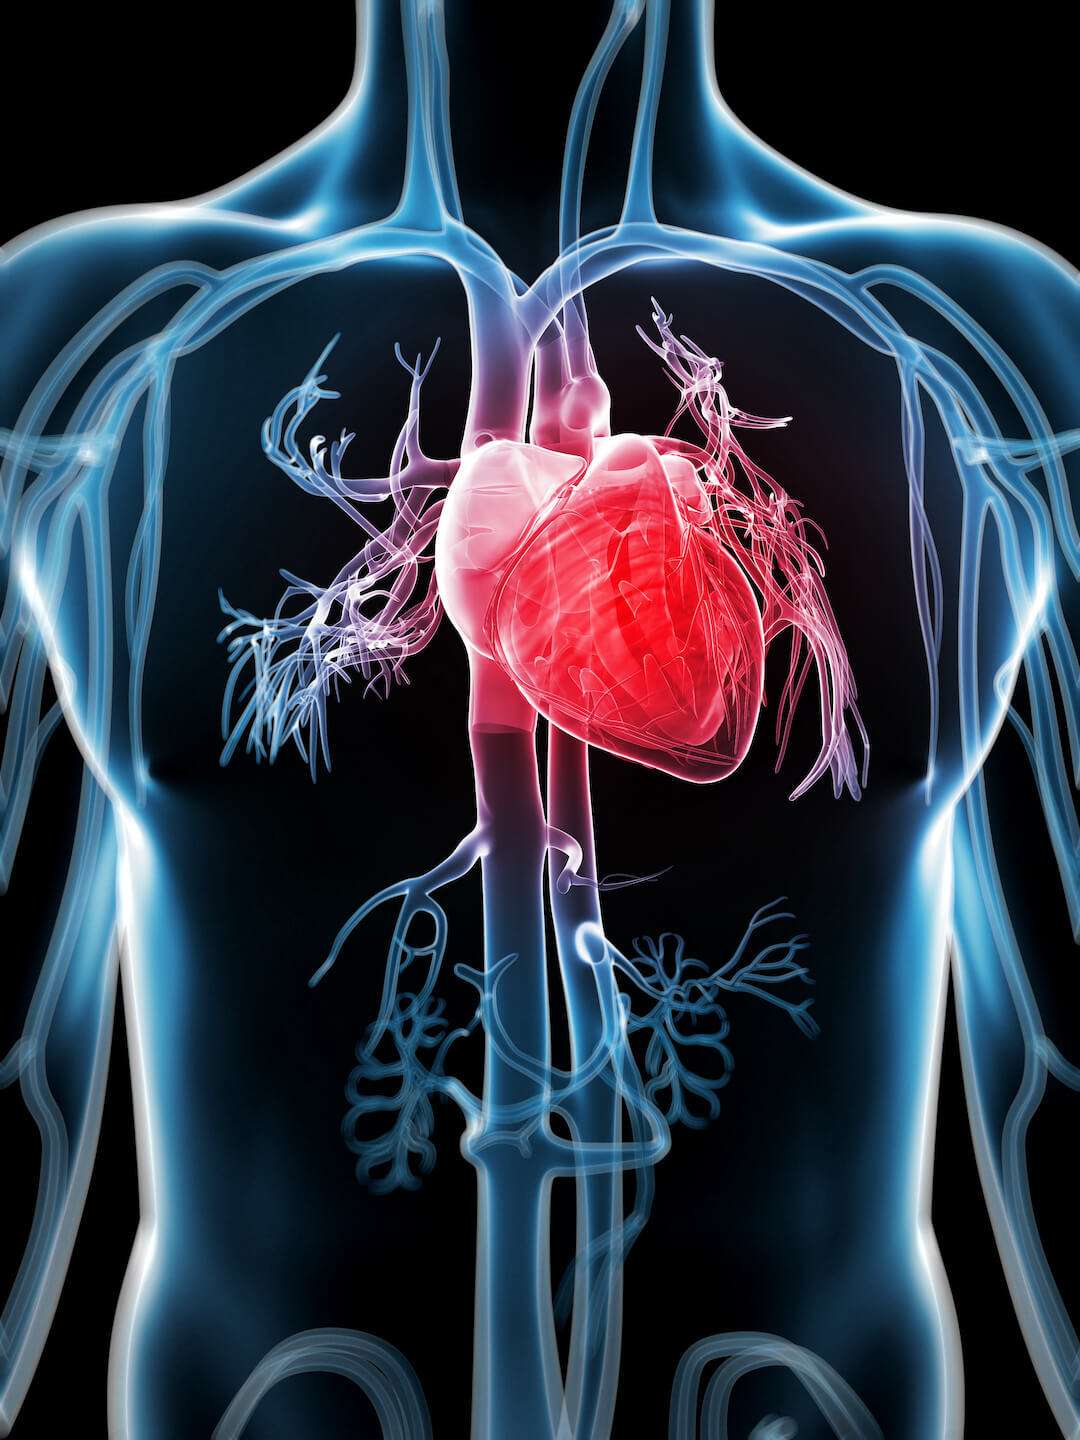 Ischemic heart disease twice as common in men